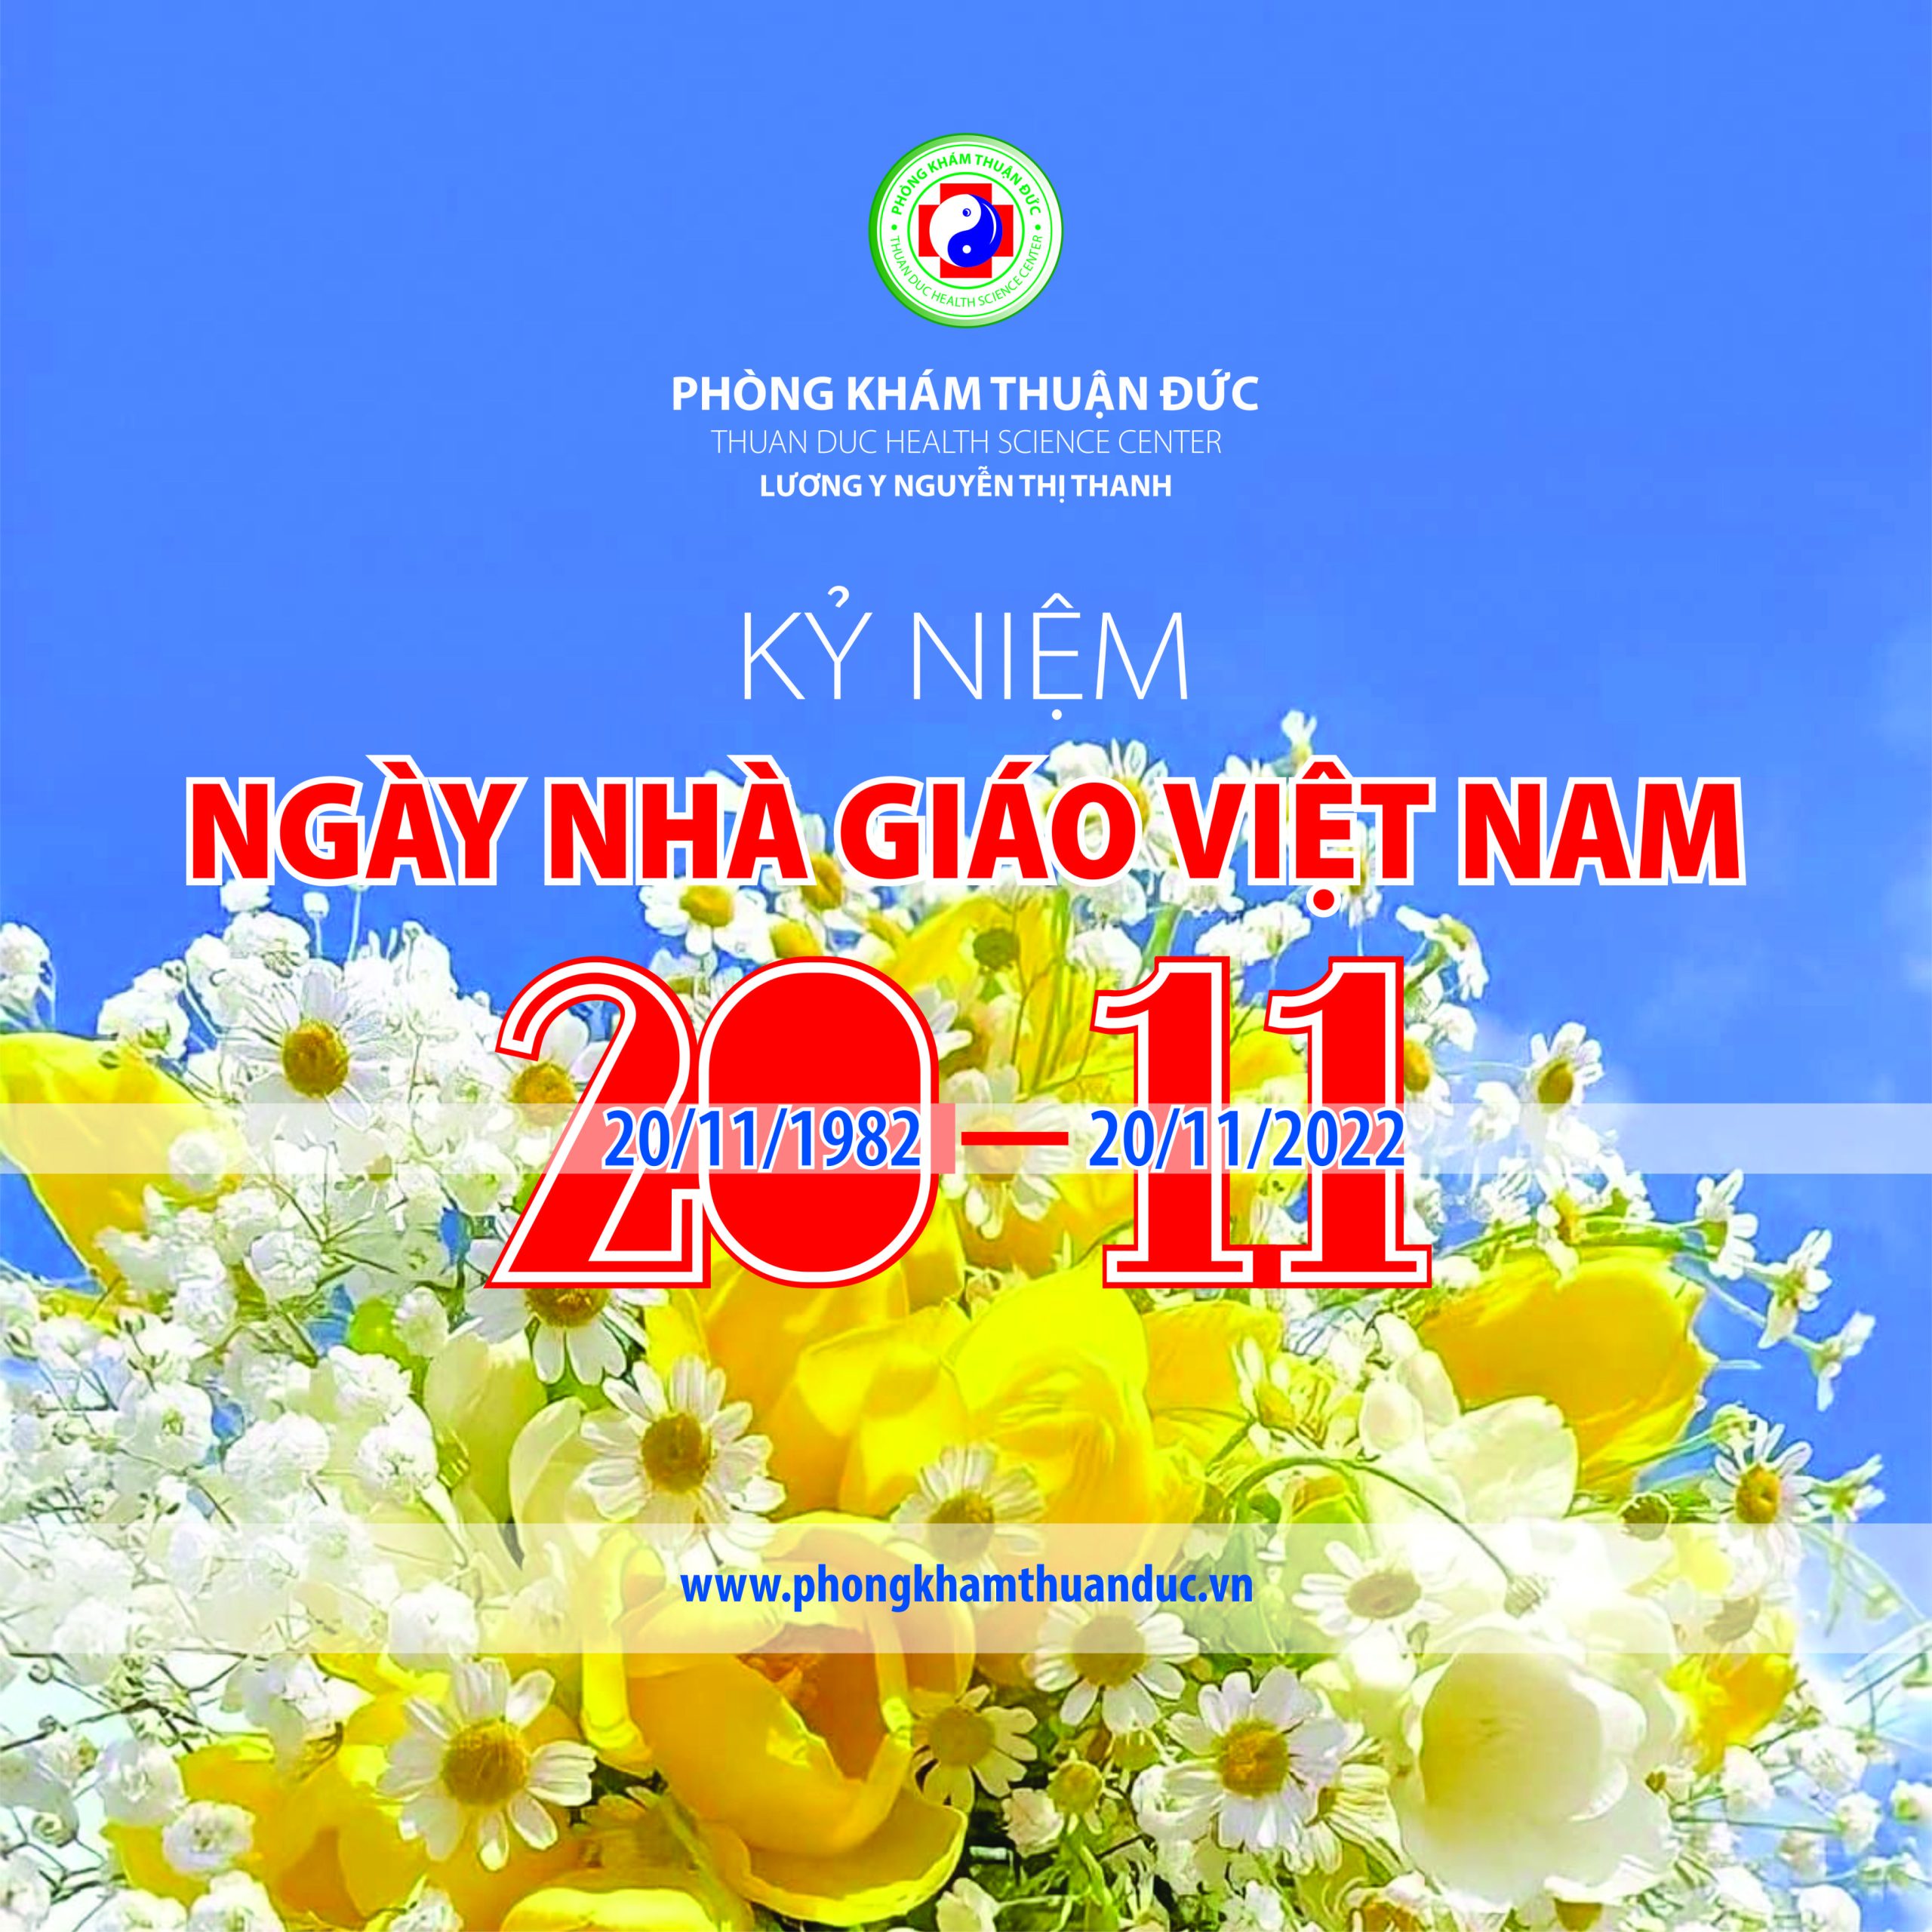 Chúc mừng Ngày nhà giáo Việt Nam 20-11!